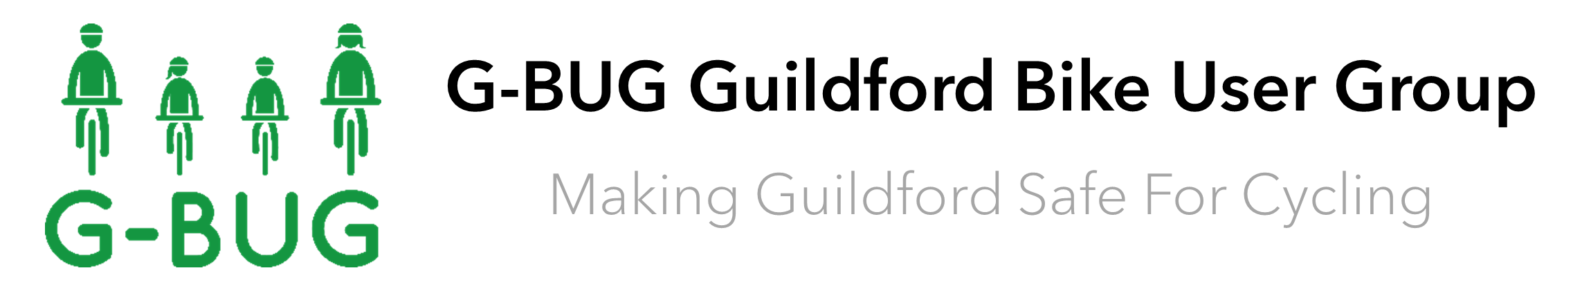 GBUG Guildford Bike User Group